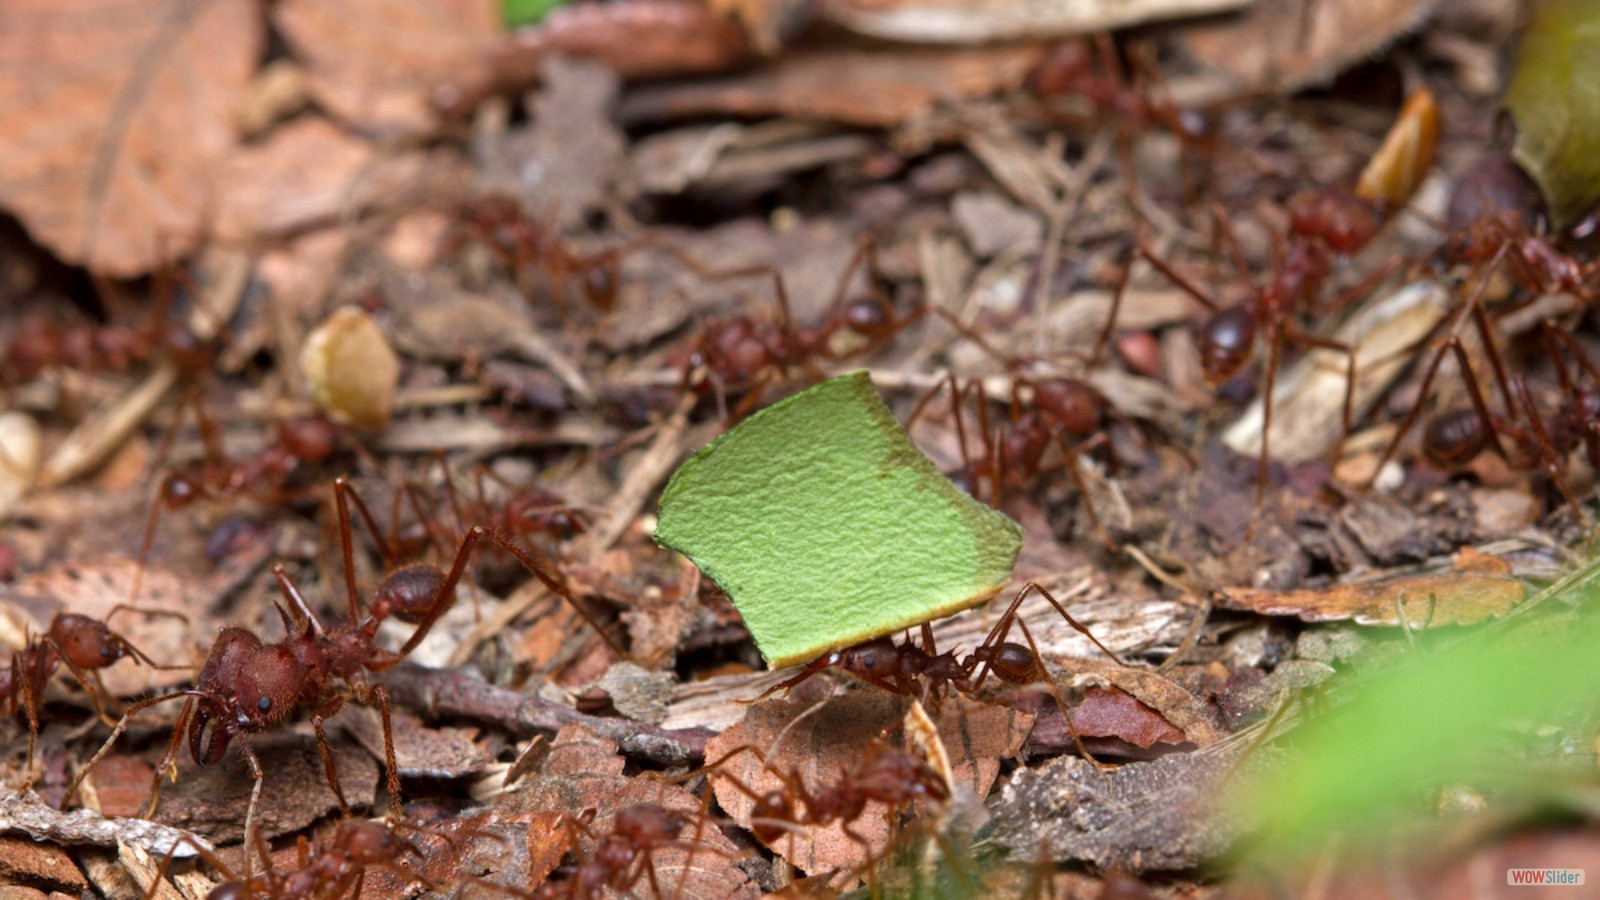 Leafcutter ant nest. Photo by Alejandro Santillana